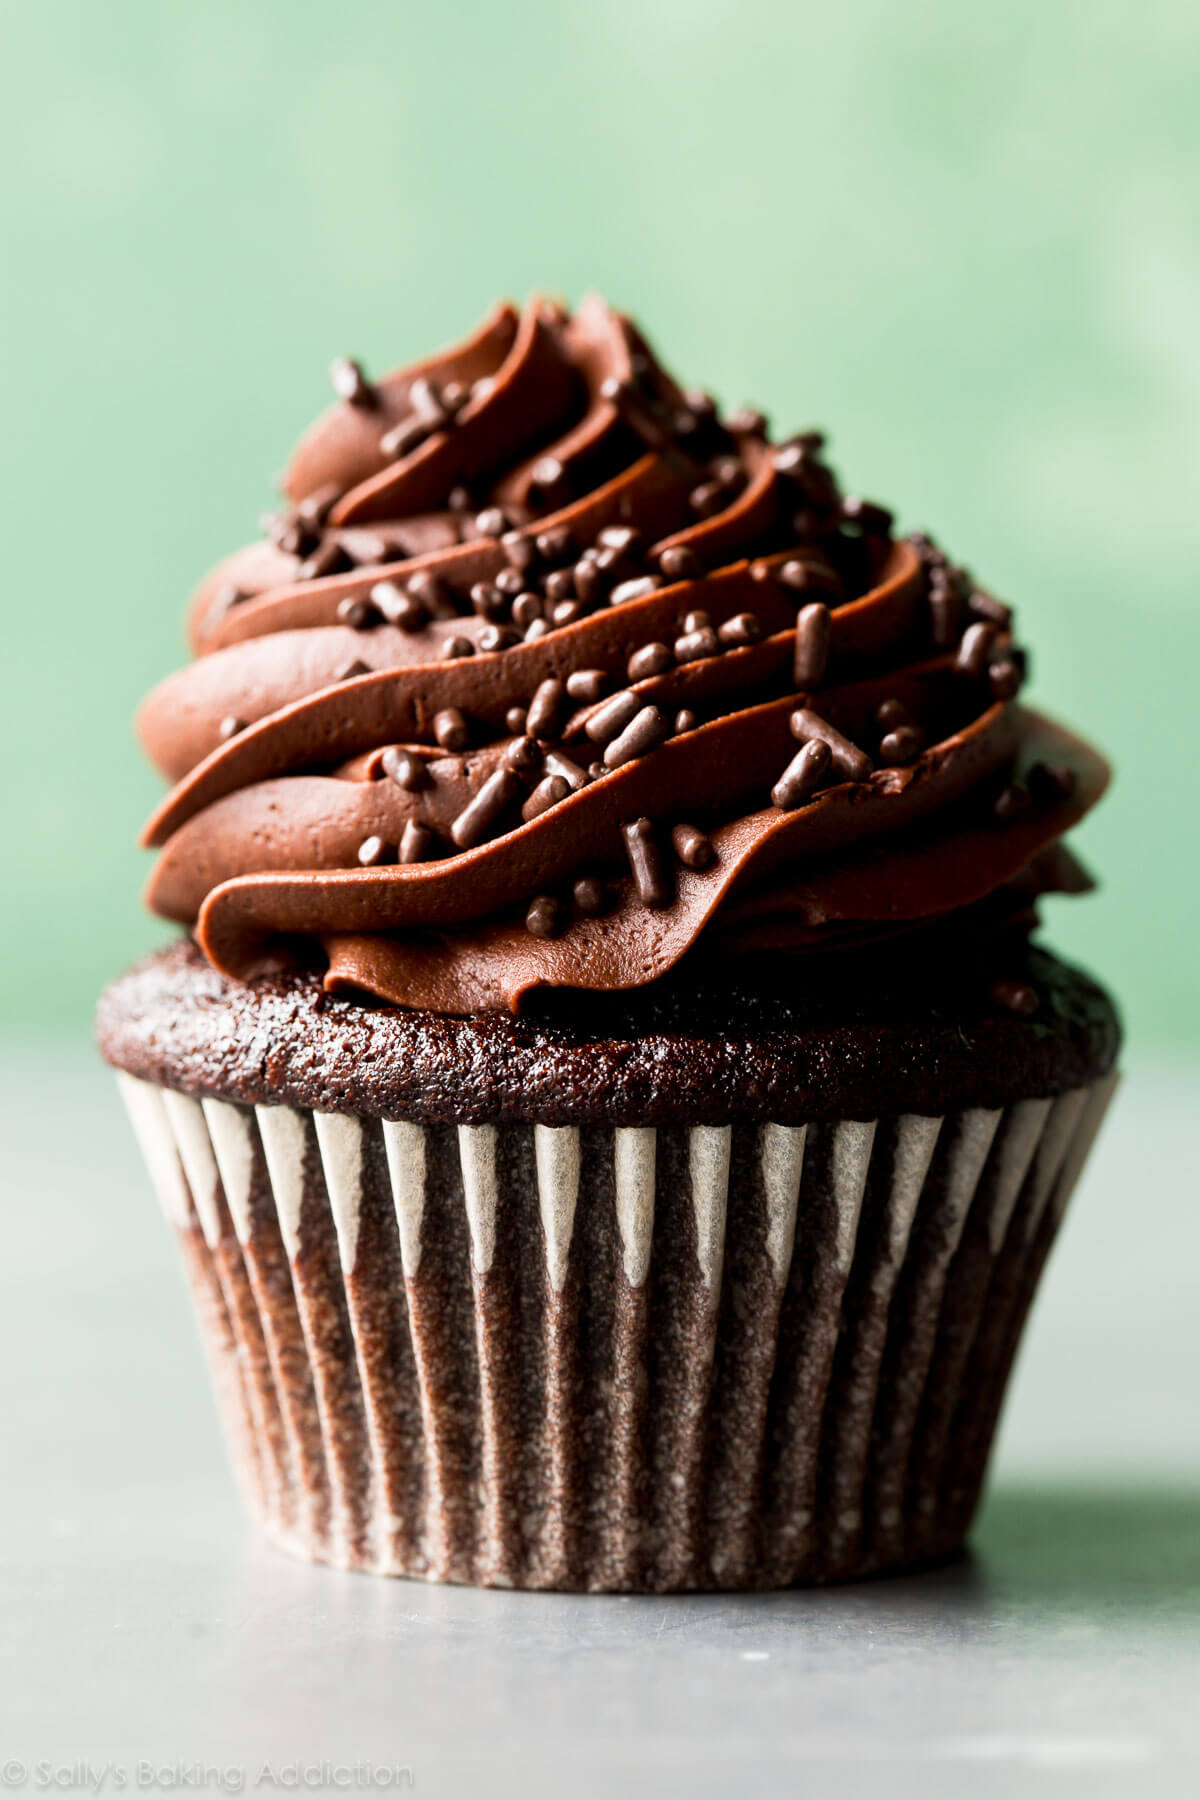 Les meilleurs cupcakes au chocolat faits maison que j'ai essayés! Recette sur sallysbakingaddiction.com